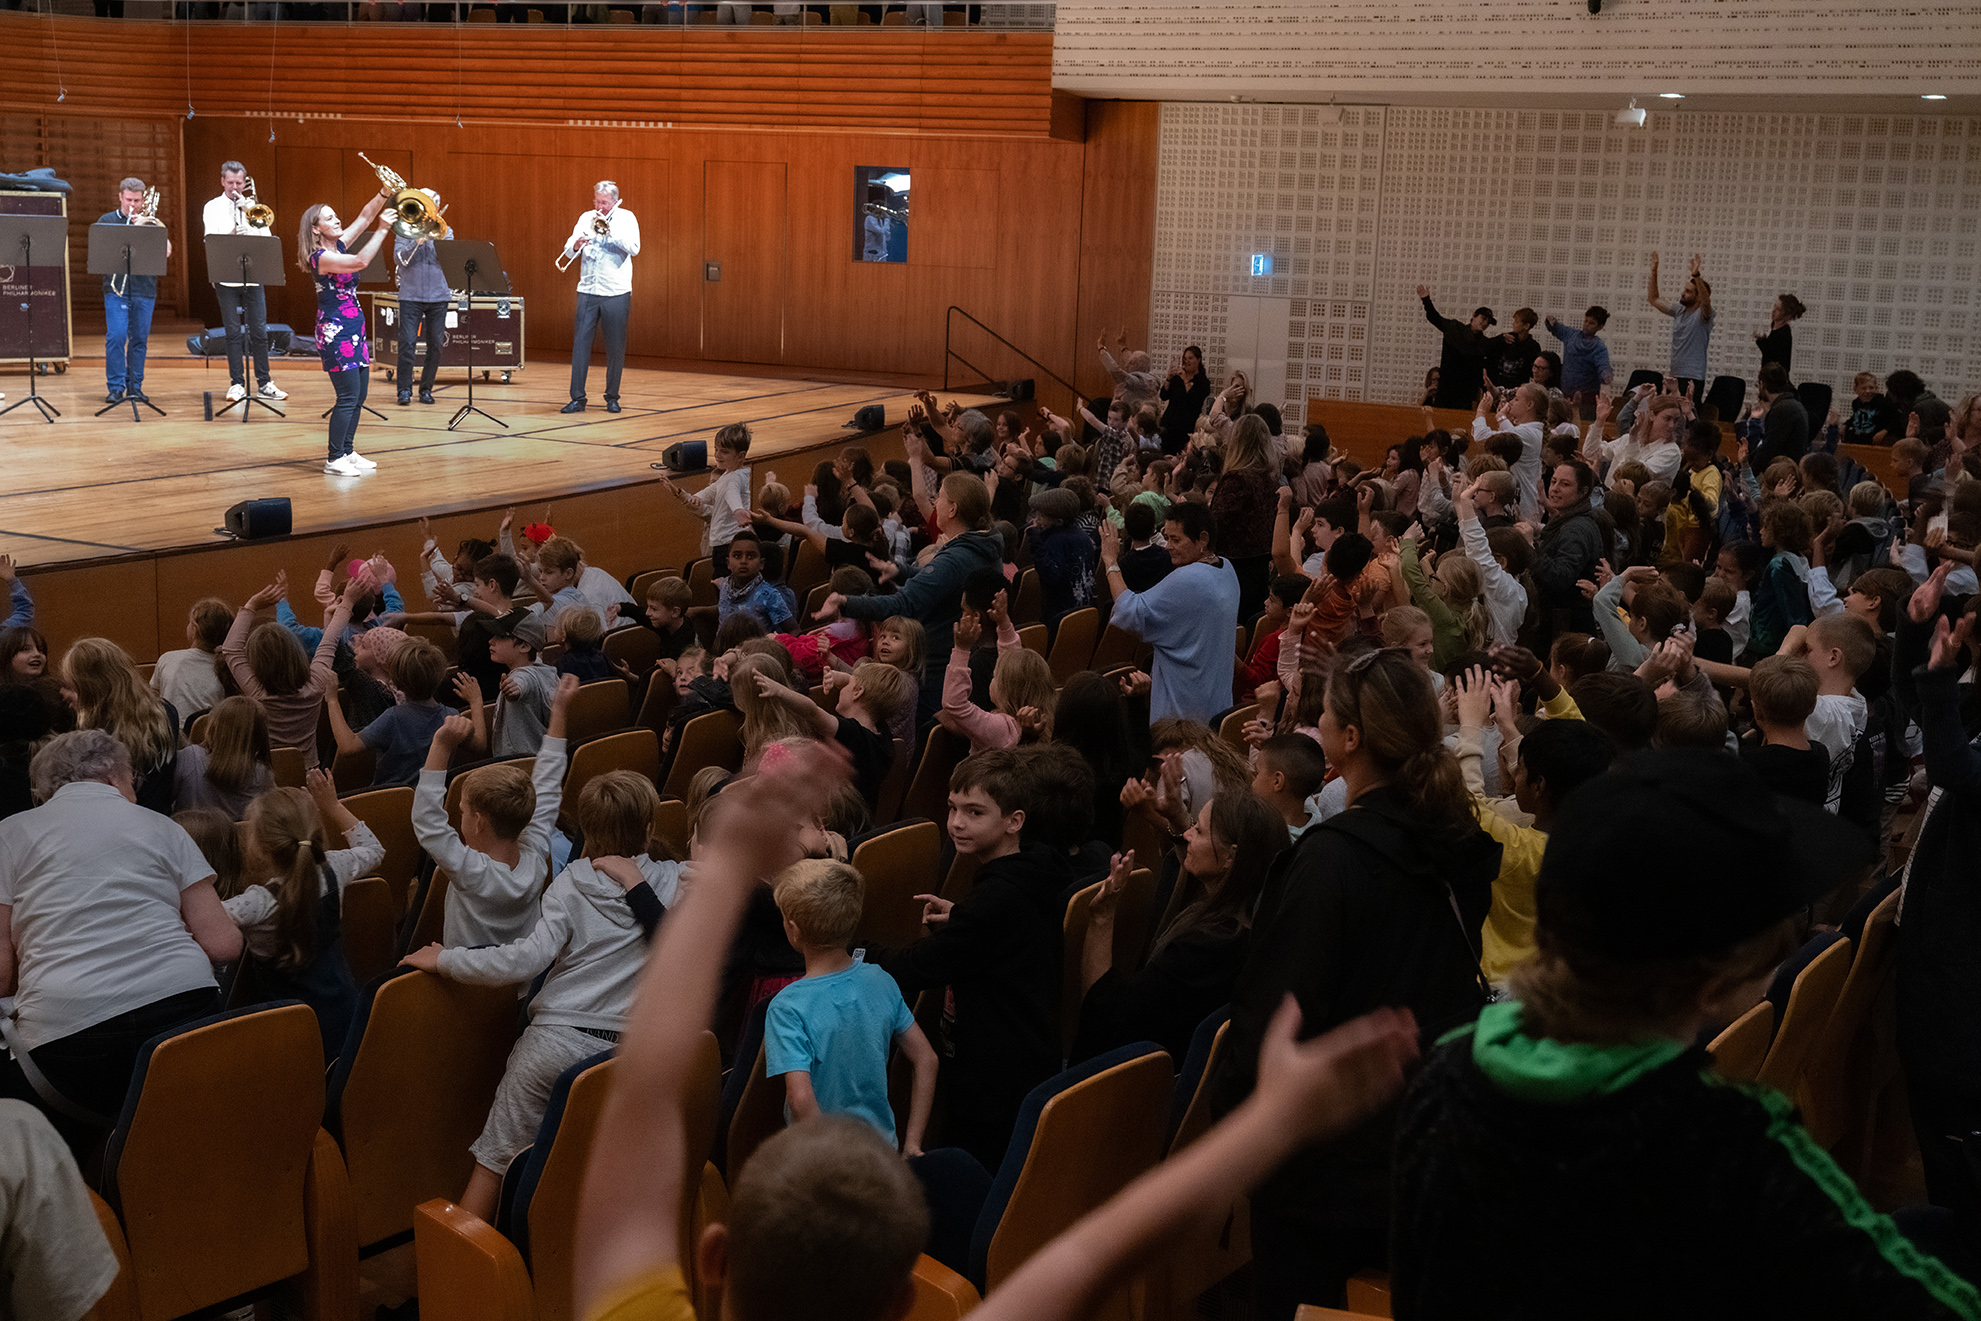 Kinder im Publikum mit hochgereckten Armen, auf der Bühne Musiker mit Blechblasinstrumenten